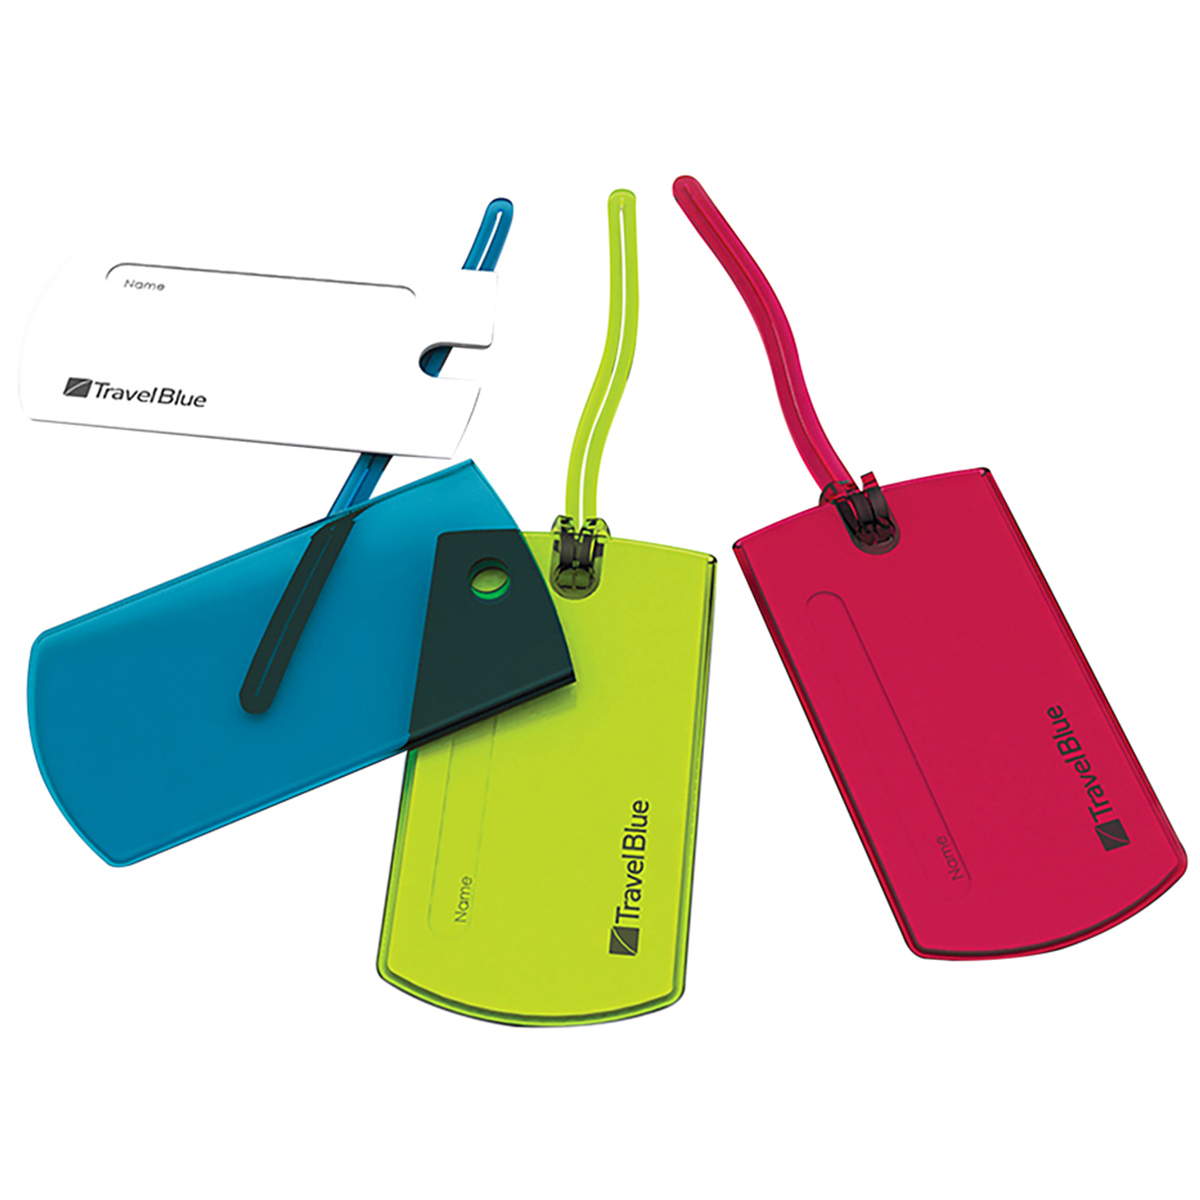  24 fundas de etiquetas para llaves, identificadores de  plástico, con varios colores para identificar tus llaves : Productos de  Oficina